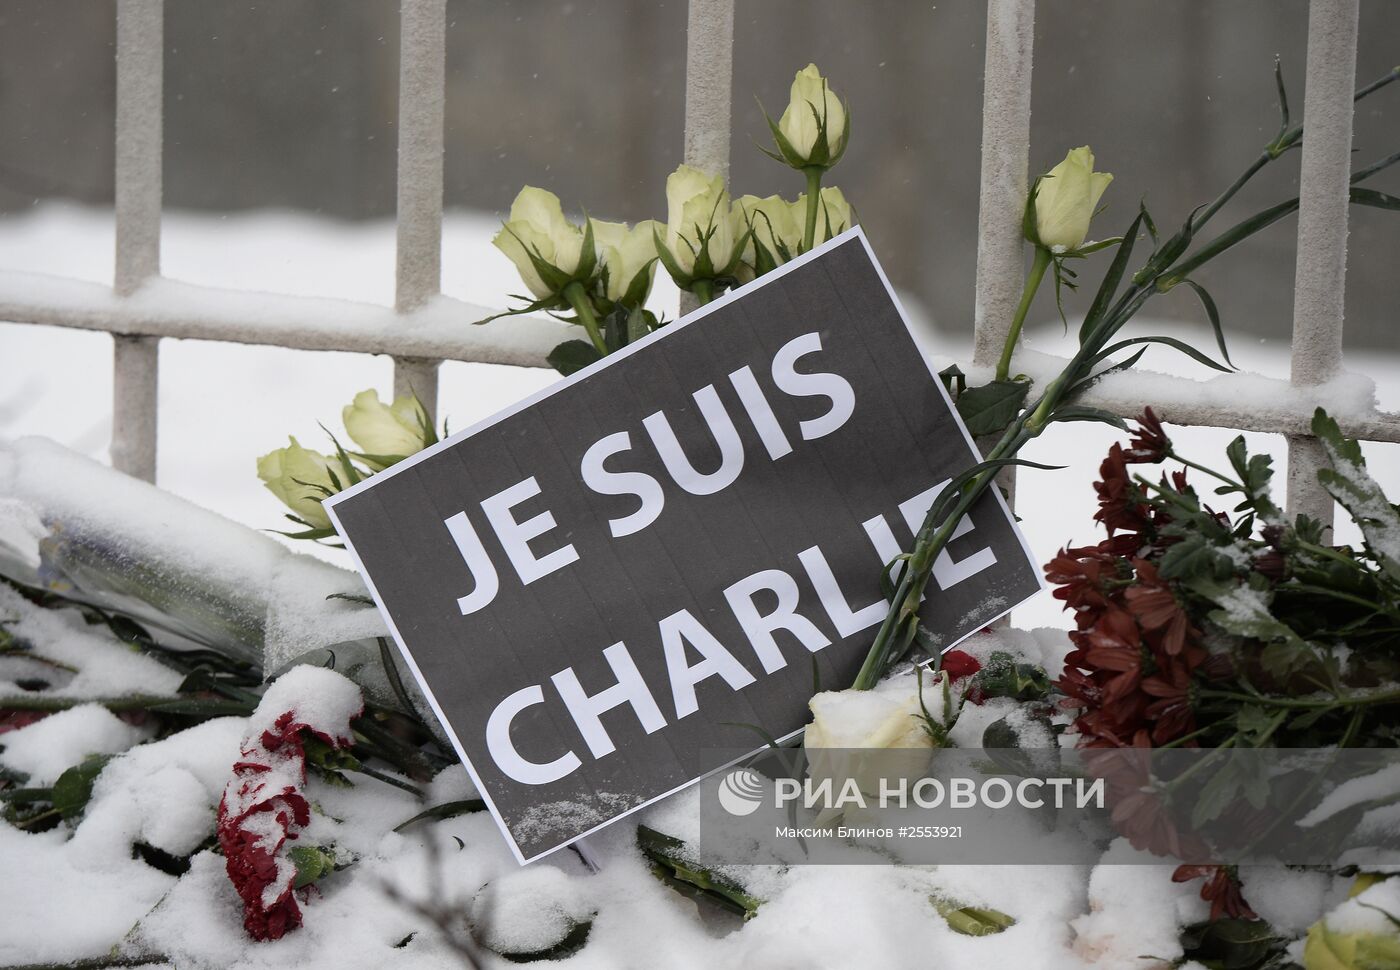 Акция солидарности с французским народом прошла в Москве